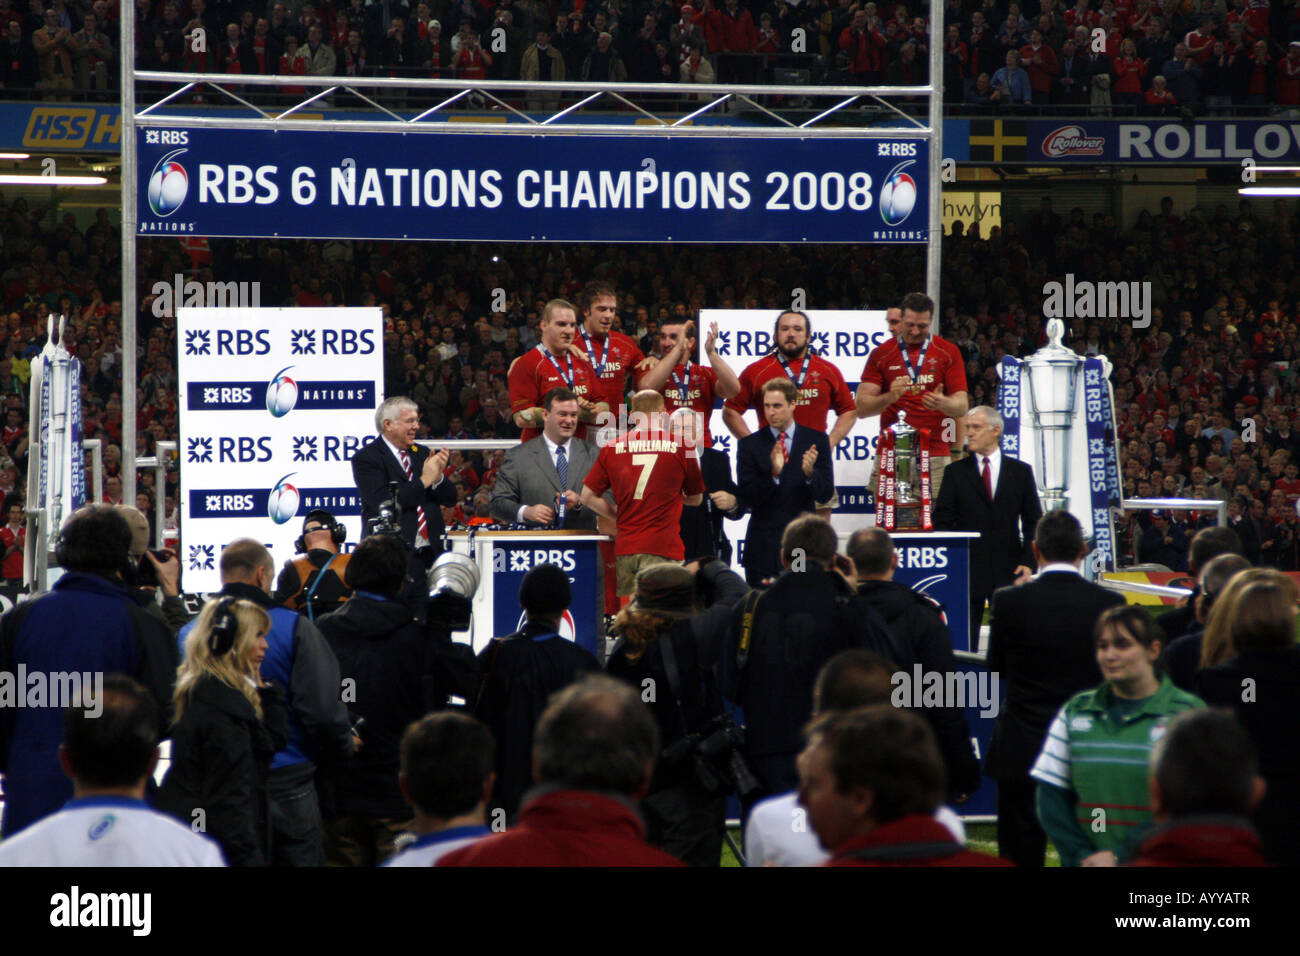 Présentation du trophée des 6 Nations au Pays de Galles. Le prince William sur le podium, Millenium Stadium, Cardiff, Pays de Galles, 2008 Banque D'Images